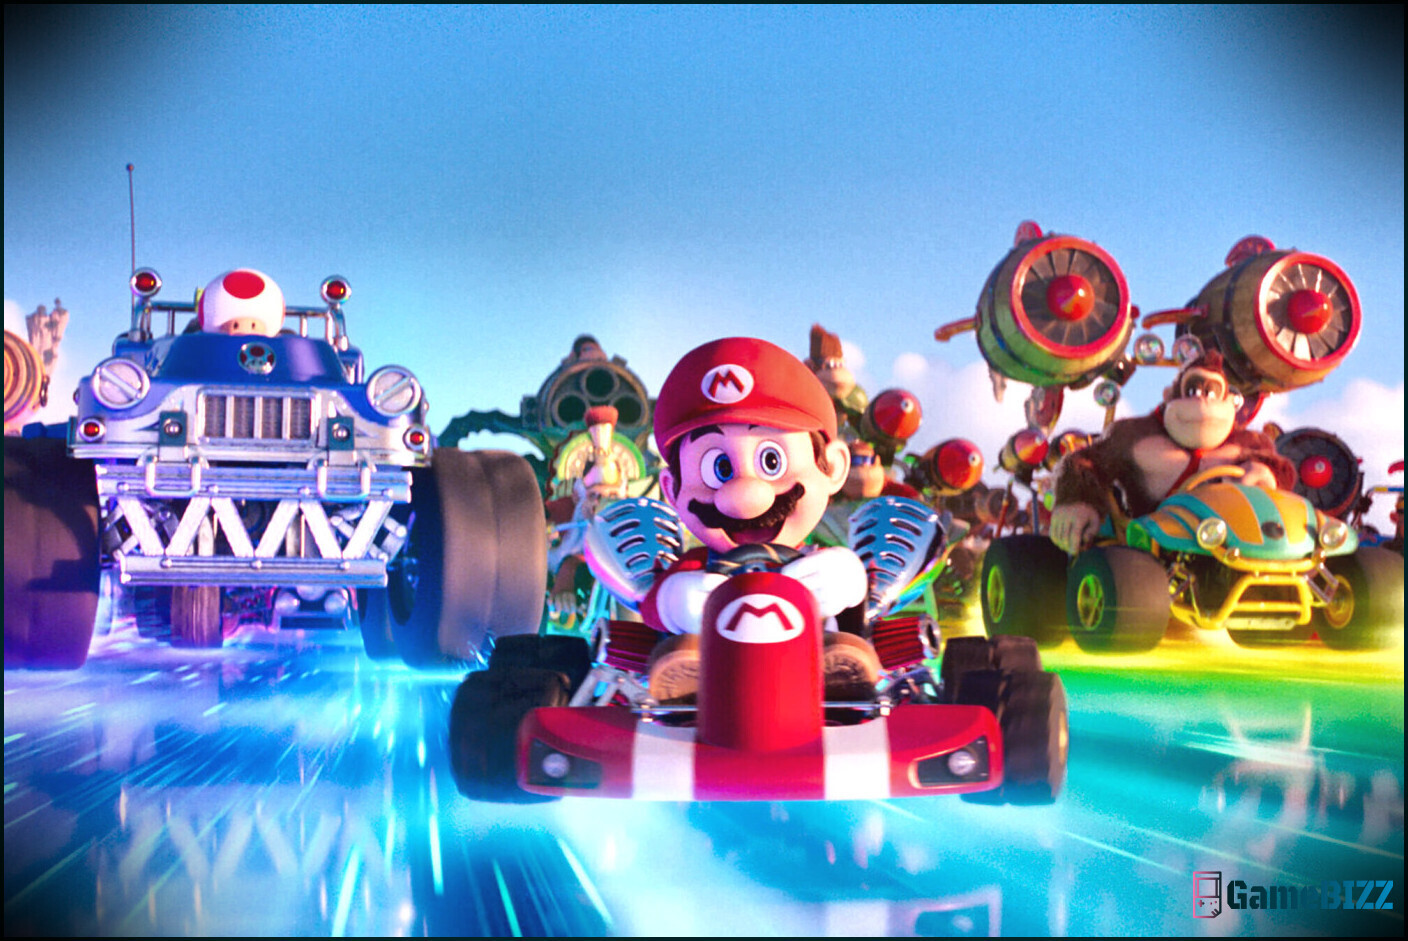 Der Mario-Film hat einen Haufen unbenutzter, vom Spiel inspirierter Musiktracks